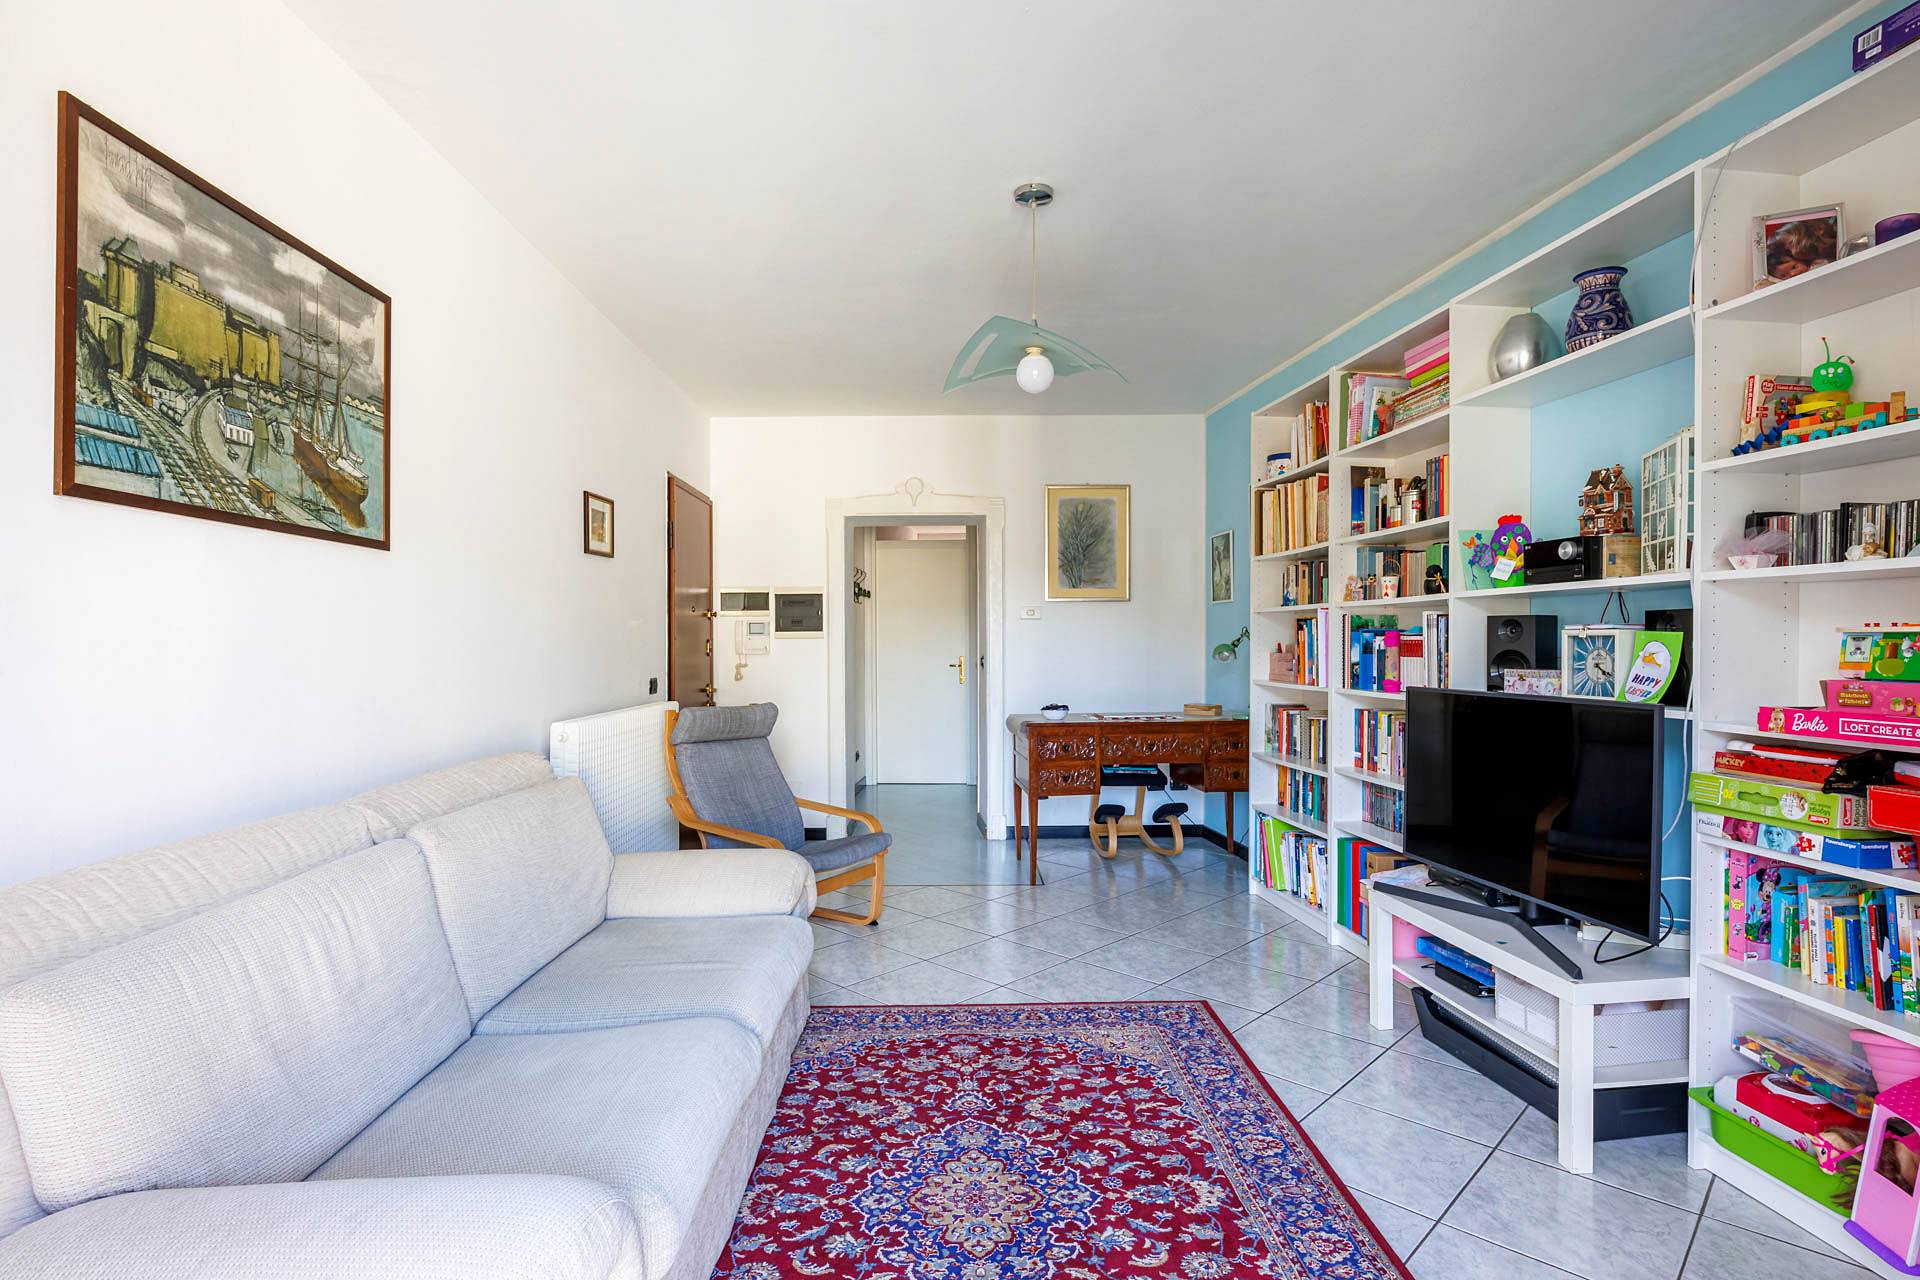 Appartamento in vendita a Sondrio, 3 locali, zona ro zona Garibaldi, prezzo € 145.000 | PortaleAgenzieImmobiliari.it